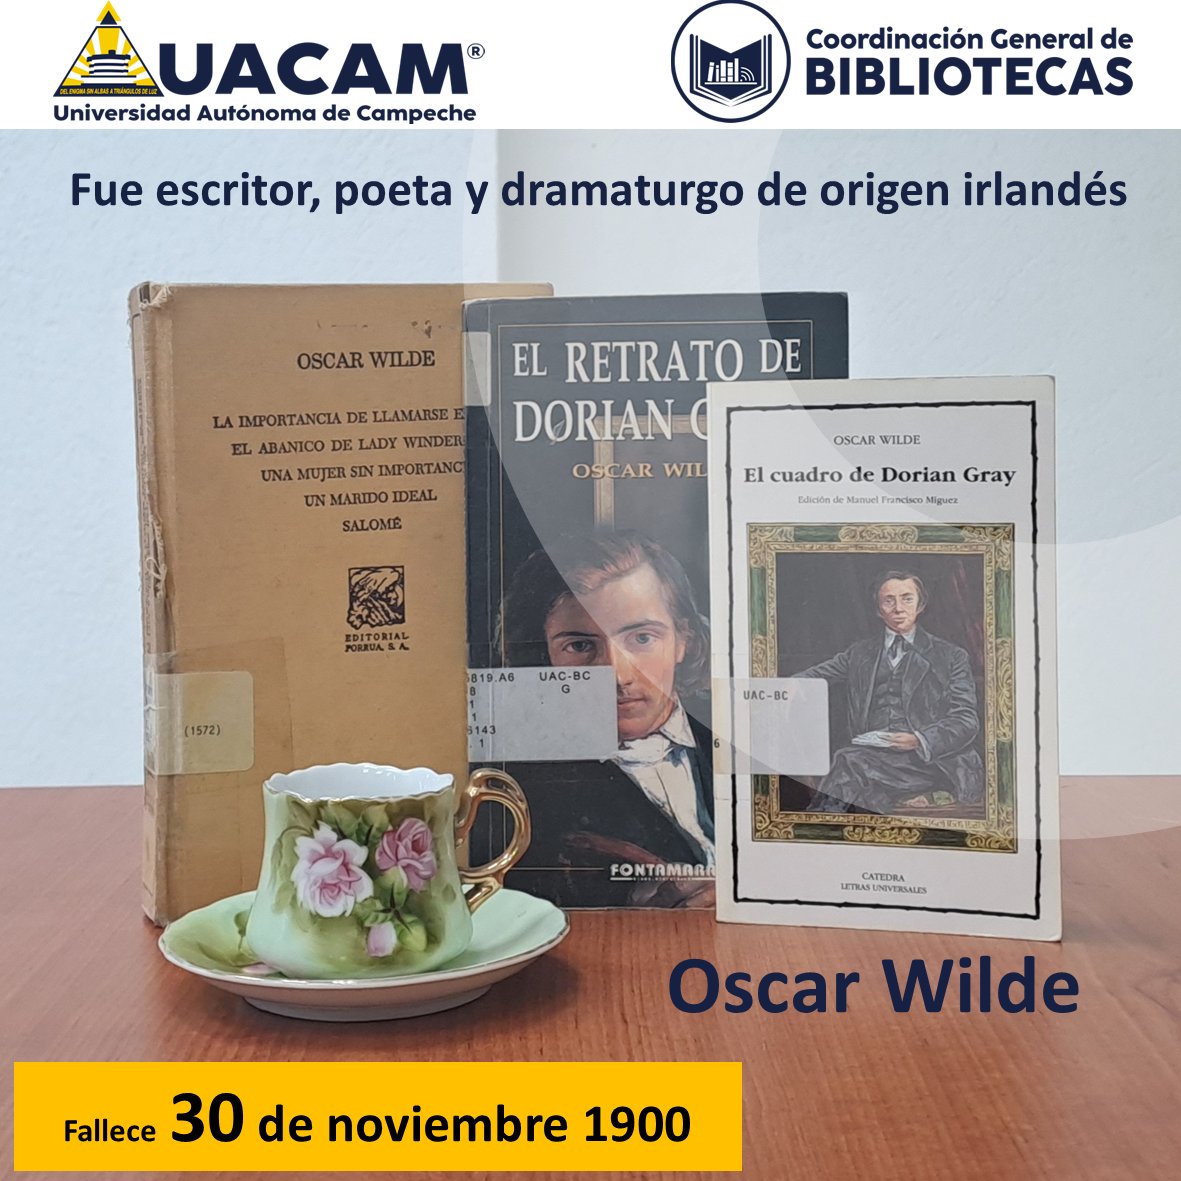 #UnDíaComoHoy, pero de 1900, fallece Oscar Wilde, es considerado uno de los dramaturgos más destacados de Londres.

#CoordinaciónGeneraldeBibliotecas #UACAM #BibliotecaUACAM #ludoteca #Libros #Lectura #FomentandoLectura  #LeerEsCultura #OscarWilde